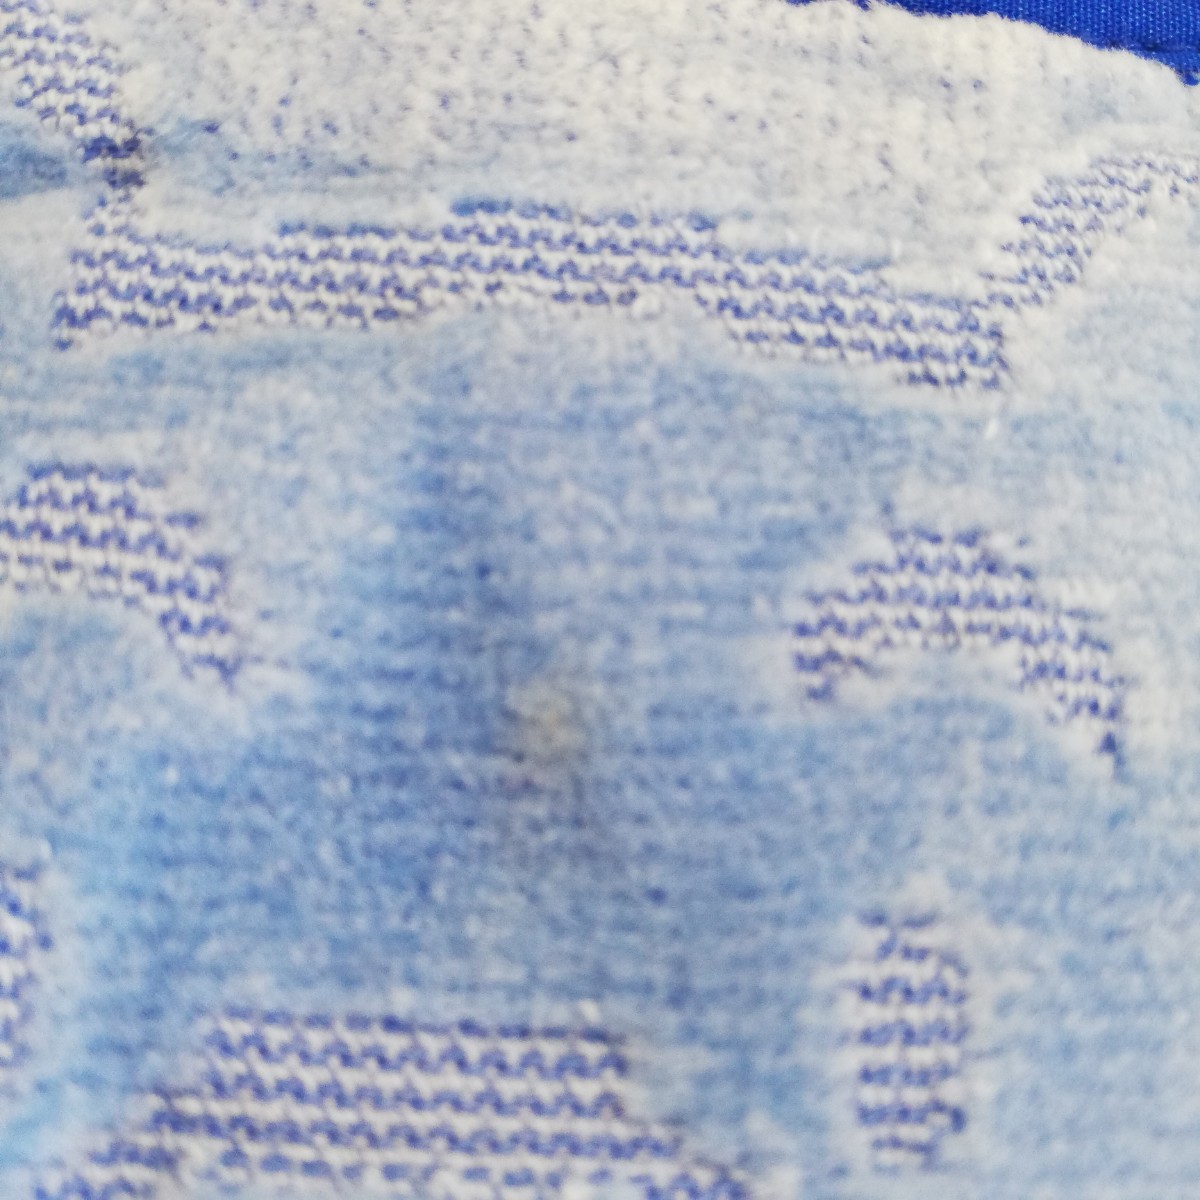  внутри . акционерное общество Винни Пух платье полотенце не использовался товар вешалка имеется полотенце товары 